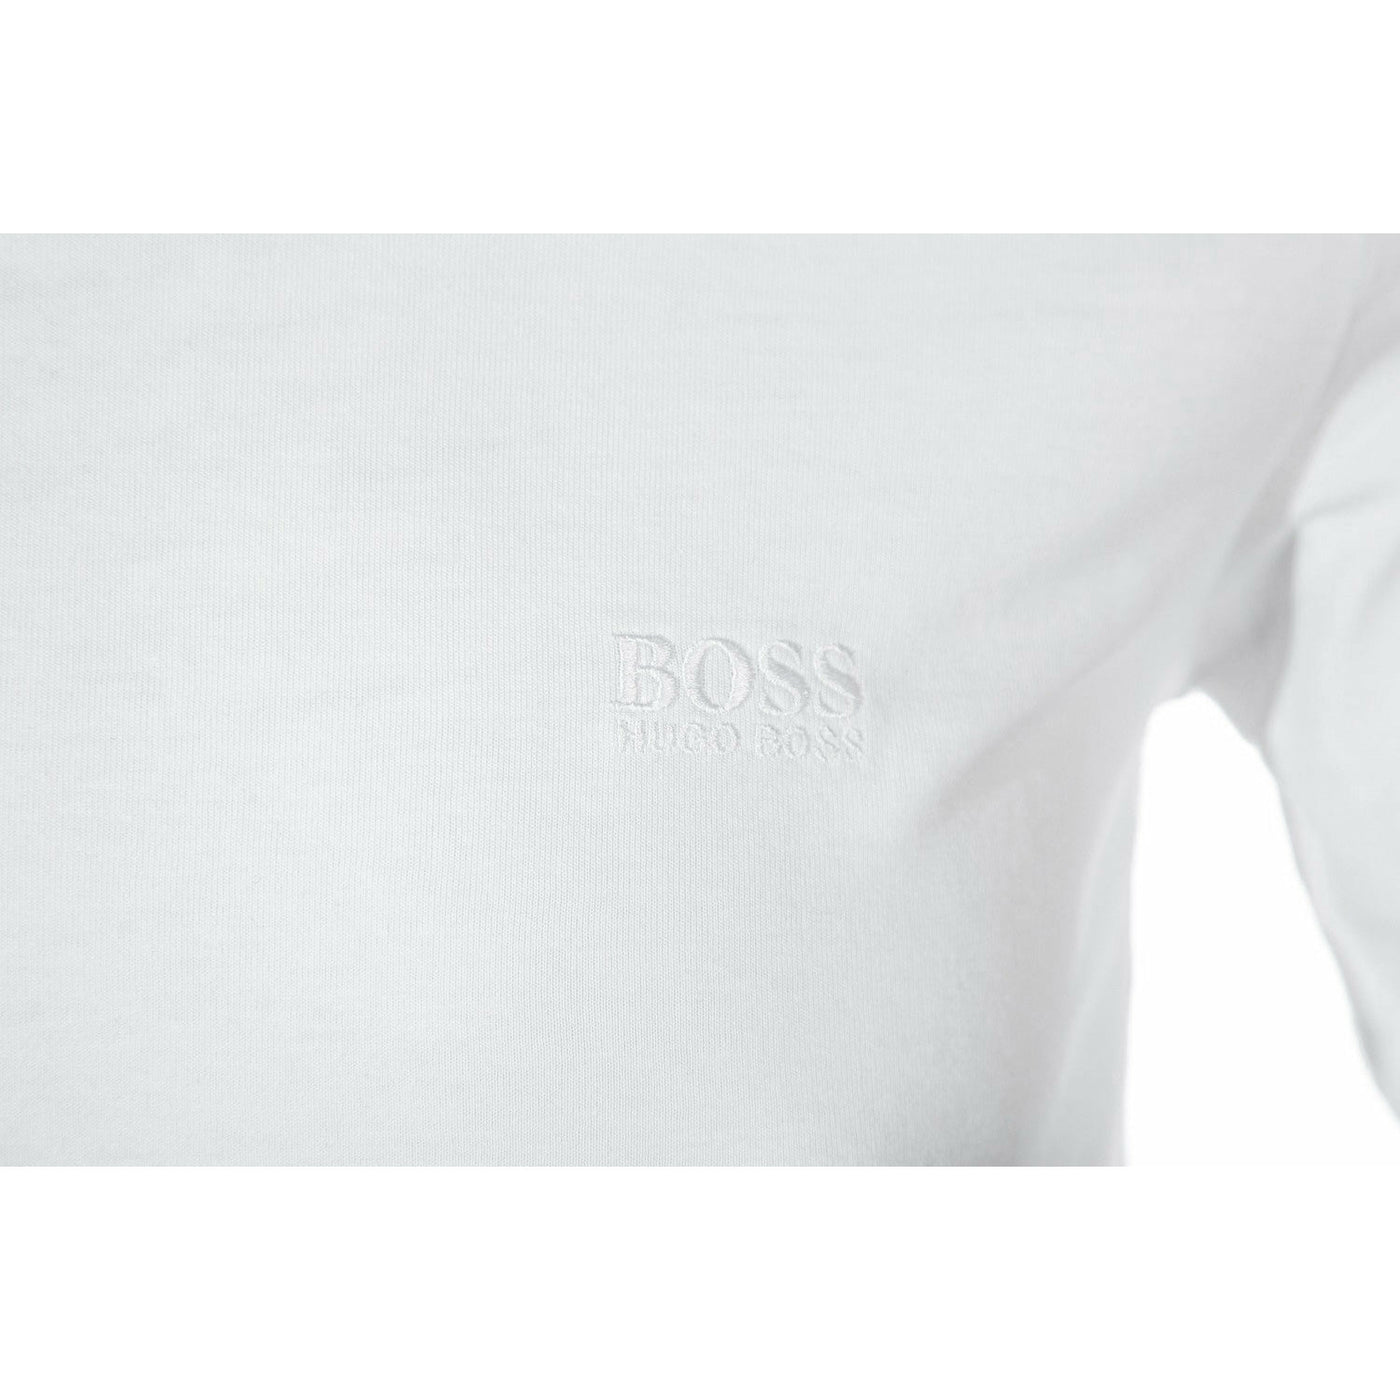 BOSS T Shirt 3 Pack in White Black Grey white logo